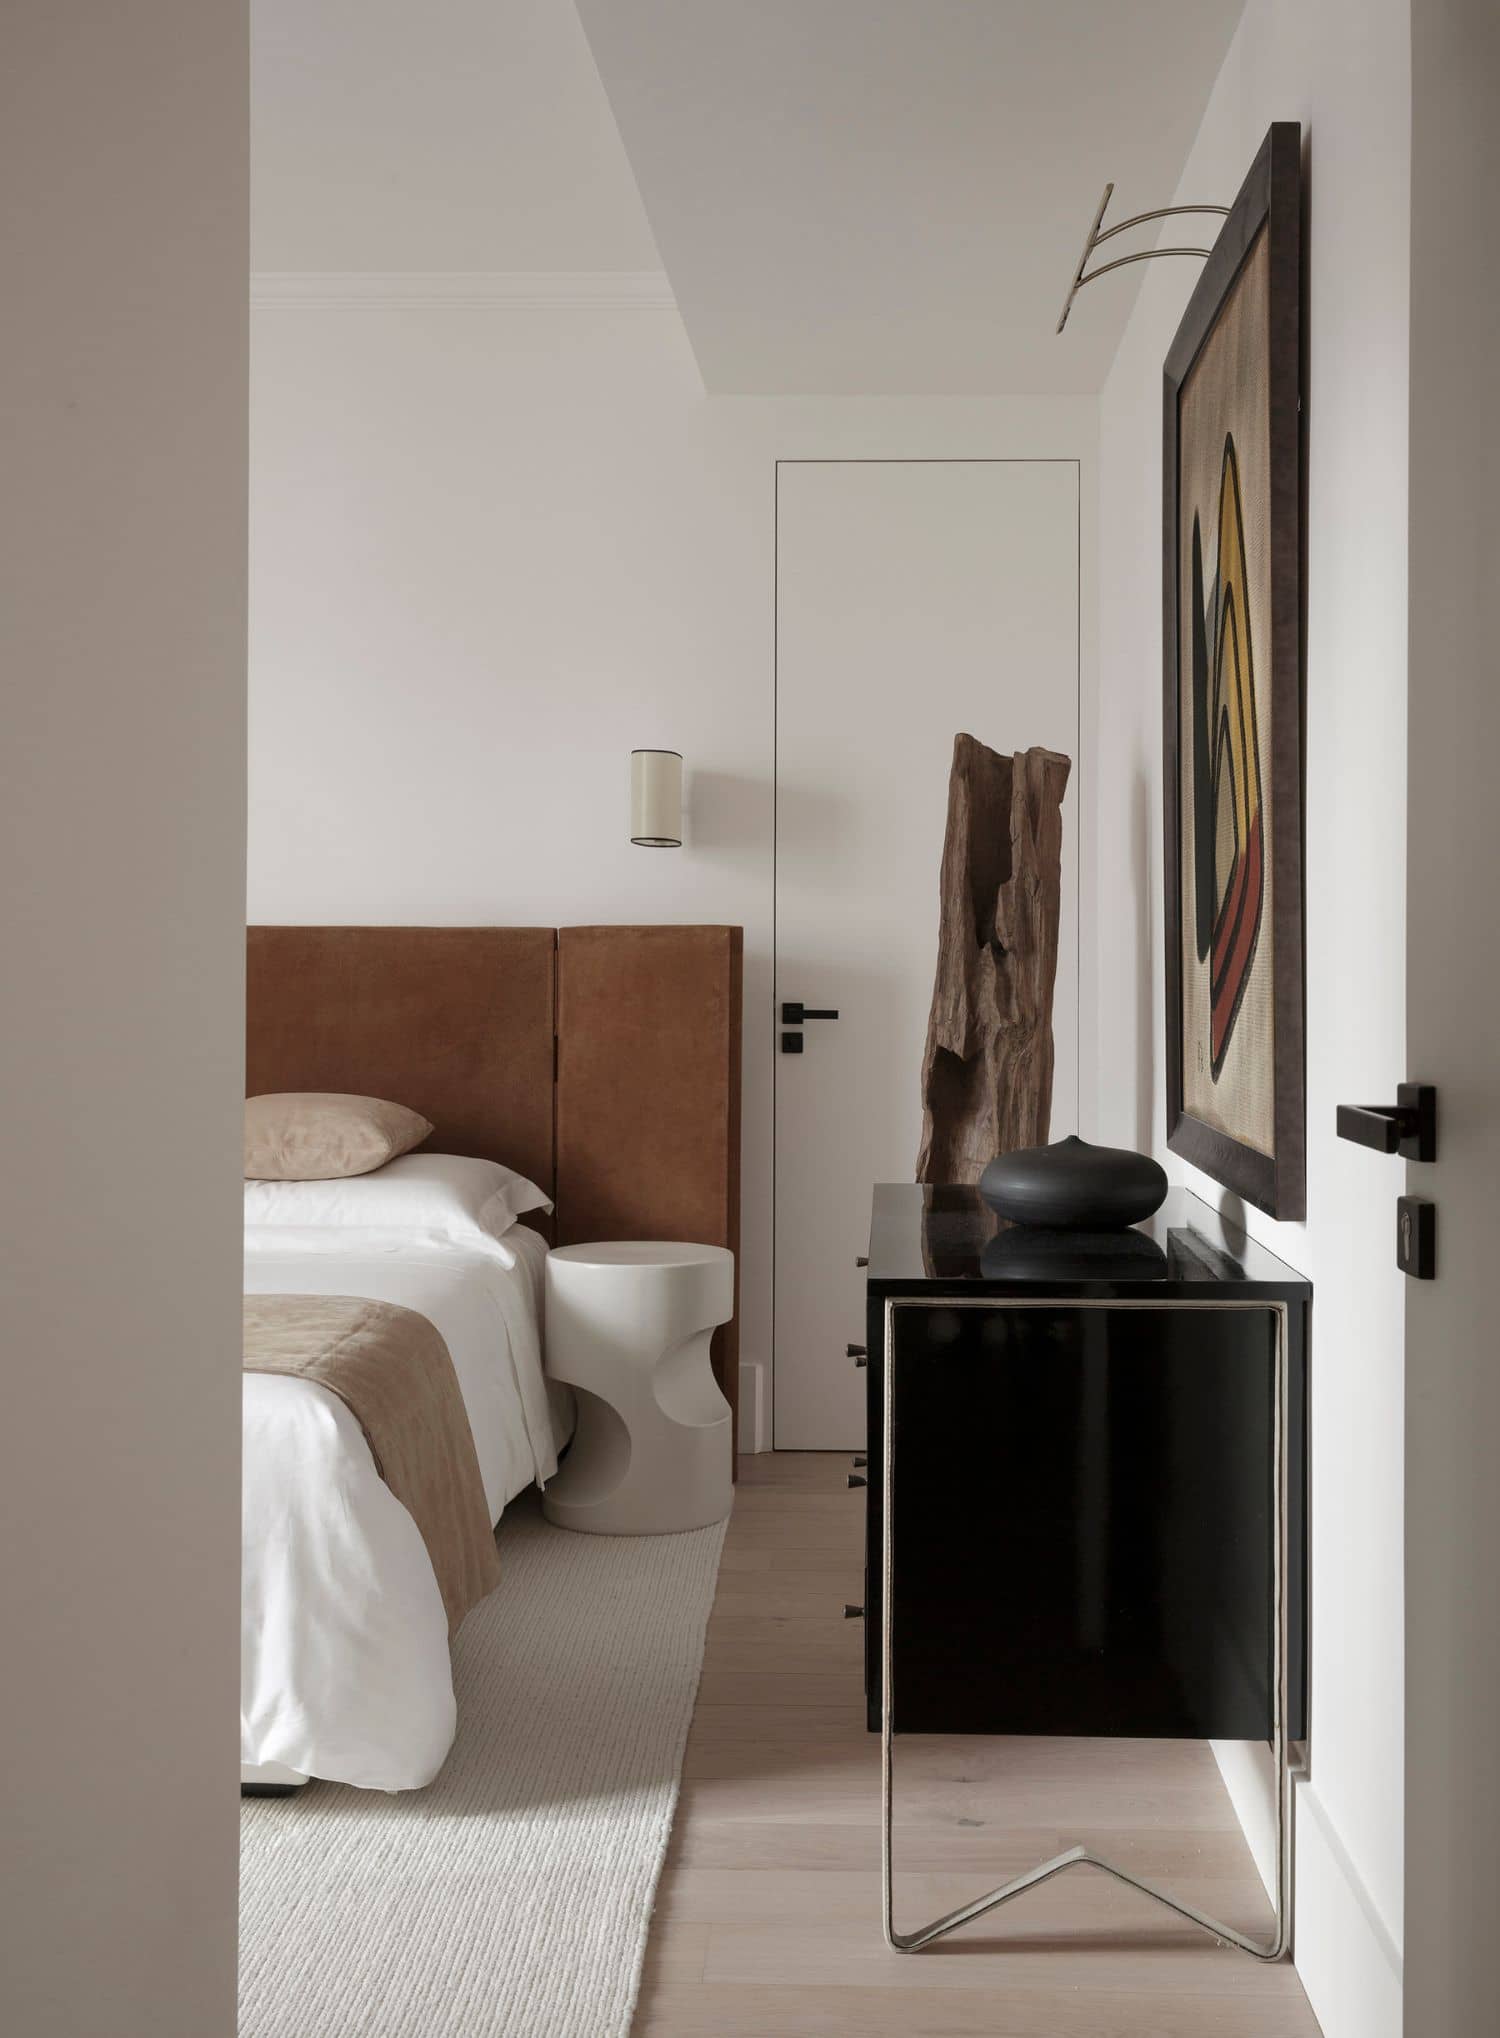 Apartment in Paris designed by Arthur Casas & Marina Werfel Interior Design 